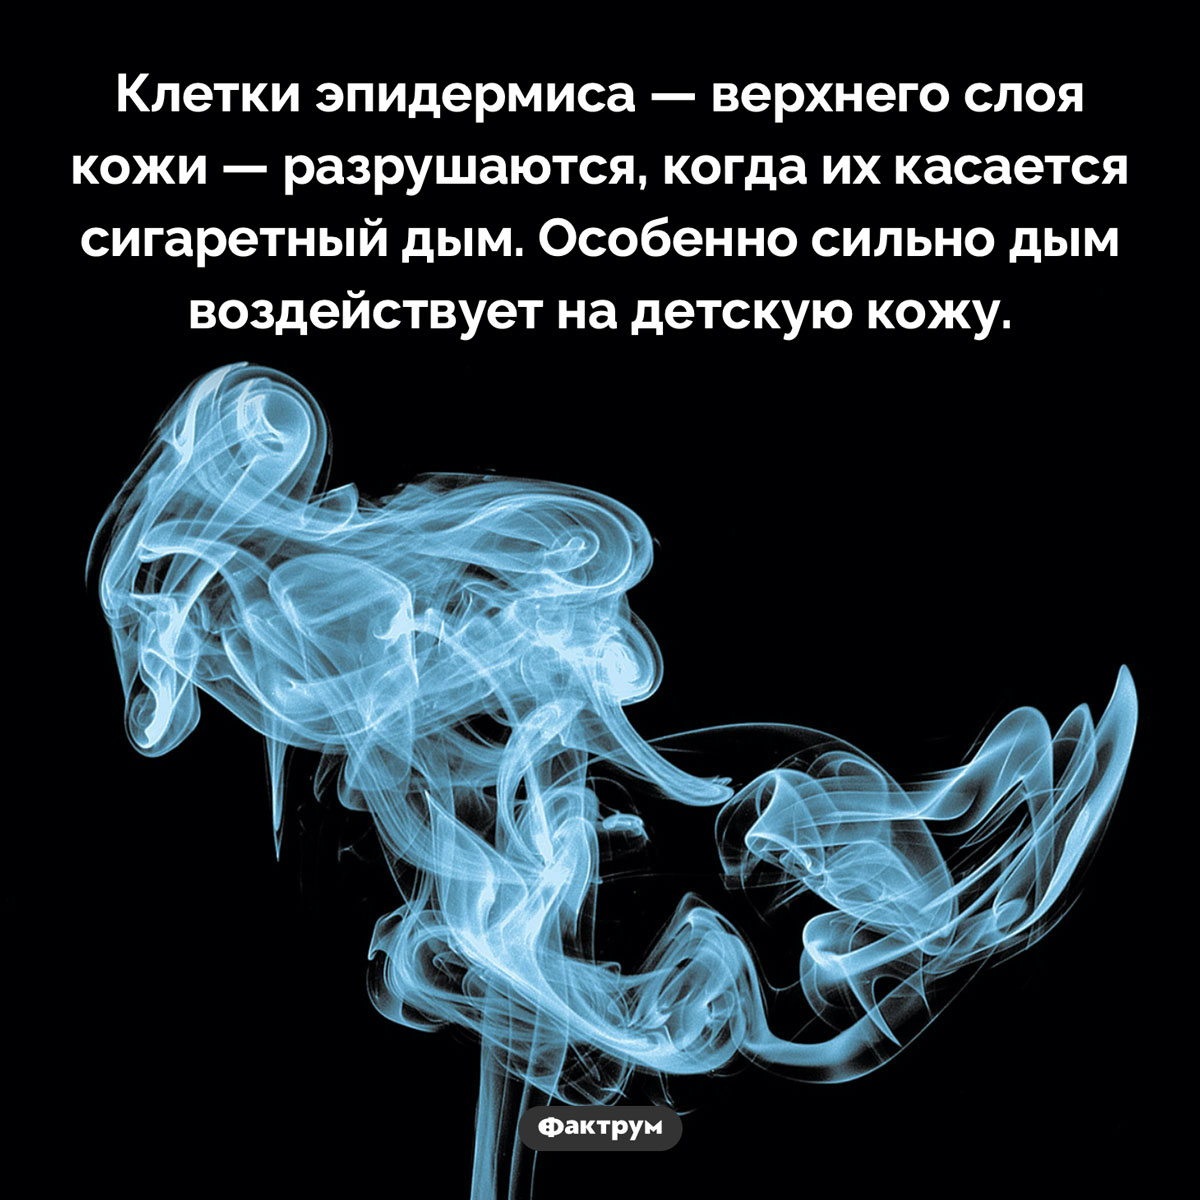 Как пассивное курение вредит коже. Клетки эпидермиса — верхнего слоя кожи — разрушаются, когда их касается сигаретный дым. Особенно сильно дым воздействует на детскую кожу.